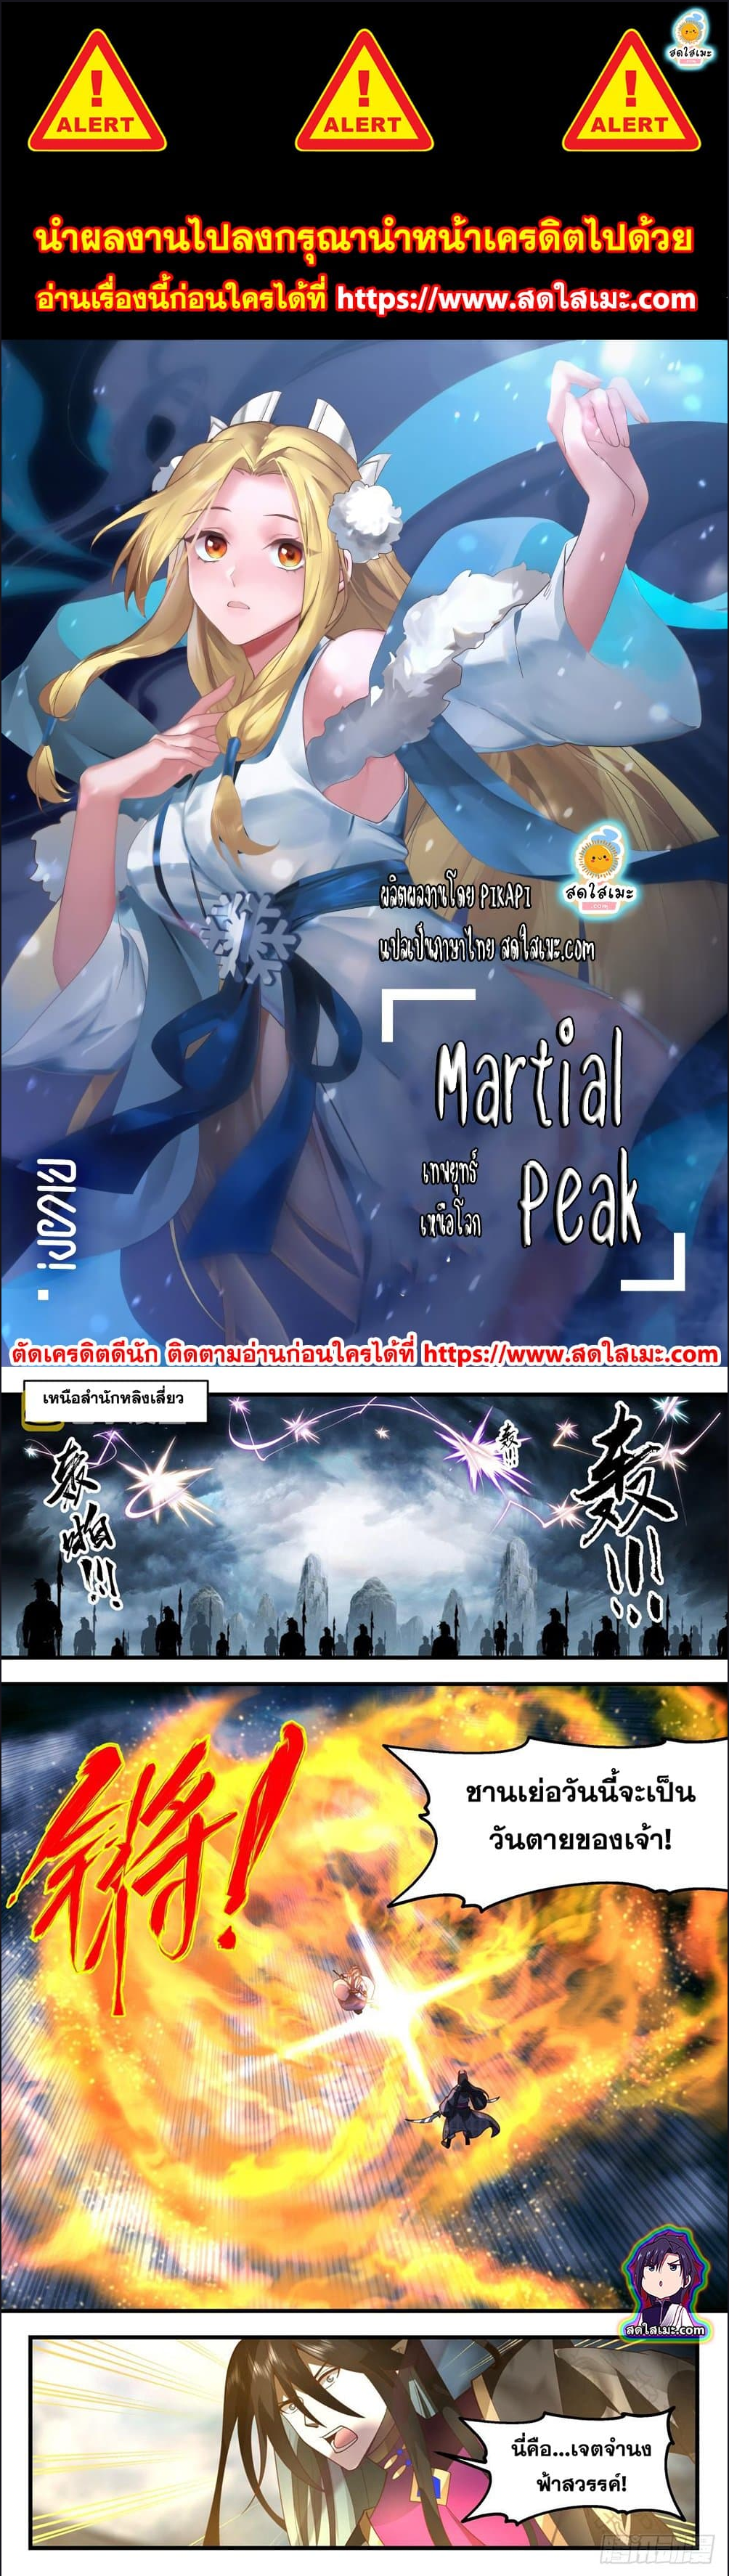 Martial Peak à¹€à¸—à¸žà¸¢à¸¸à¸—à¸˜à¹Œà¹€à¸«à¸™à¸·à¸­à¹‚à¸¥à¸ à¸•à¸­à¸™à¸—à¸µà¹ˆ 2556 (1)